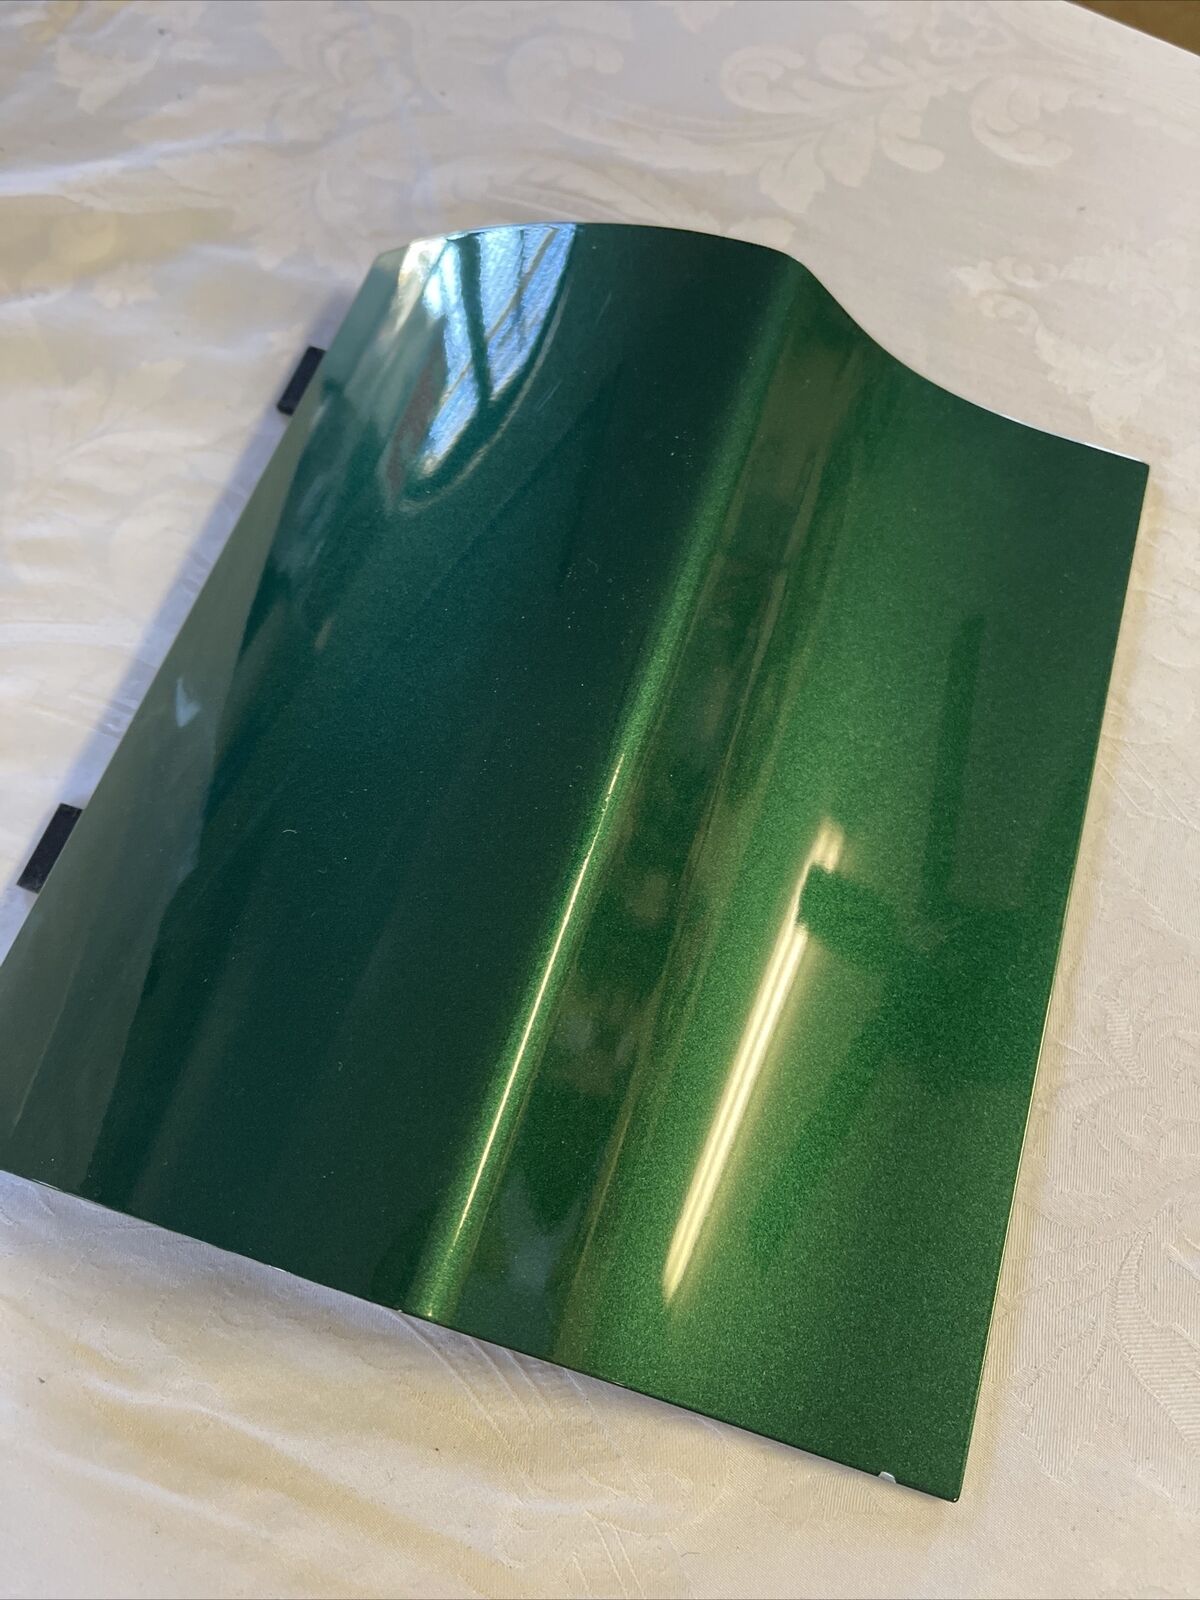 PORSCHE 911 Cayman Boxster Exterior PAINT SAMPLE 2G6 Emerald Green Metallic